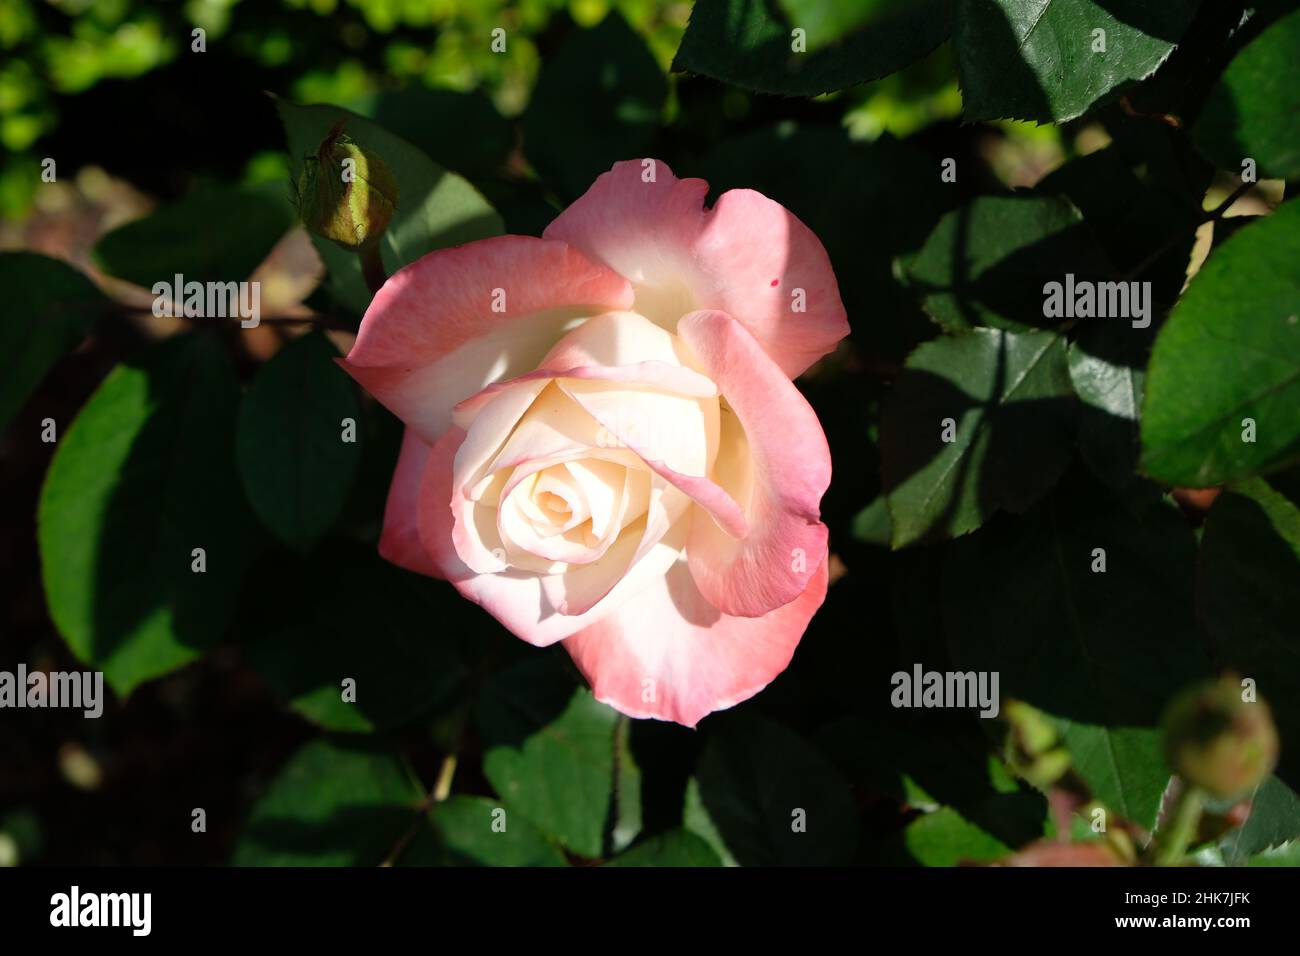 Rosa Weiß in dramatischem Sonnenlicht, das die zarte Farbvariation und Struktur der Mitte vor dem Hintergrund von Blättern und einer verschwommenen Knospe beleuchtet. Stockfoto